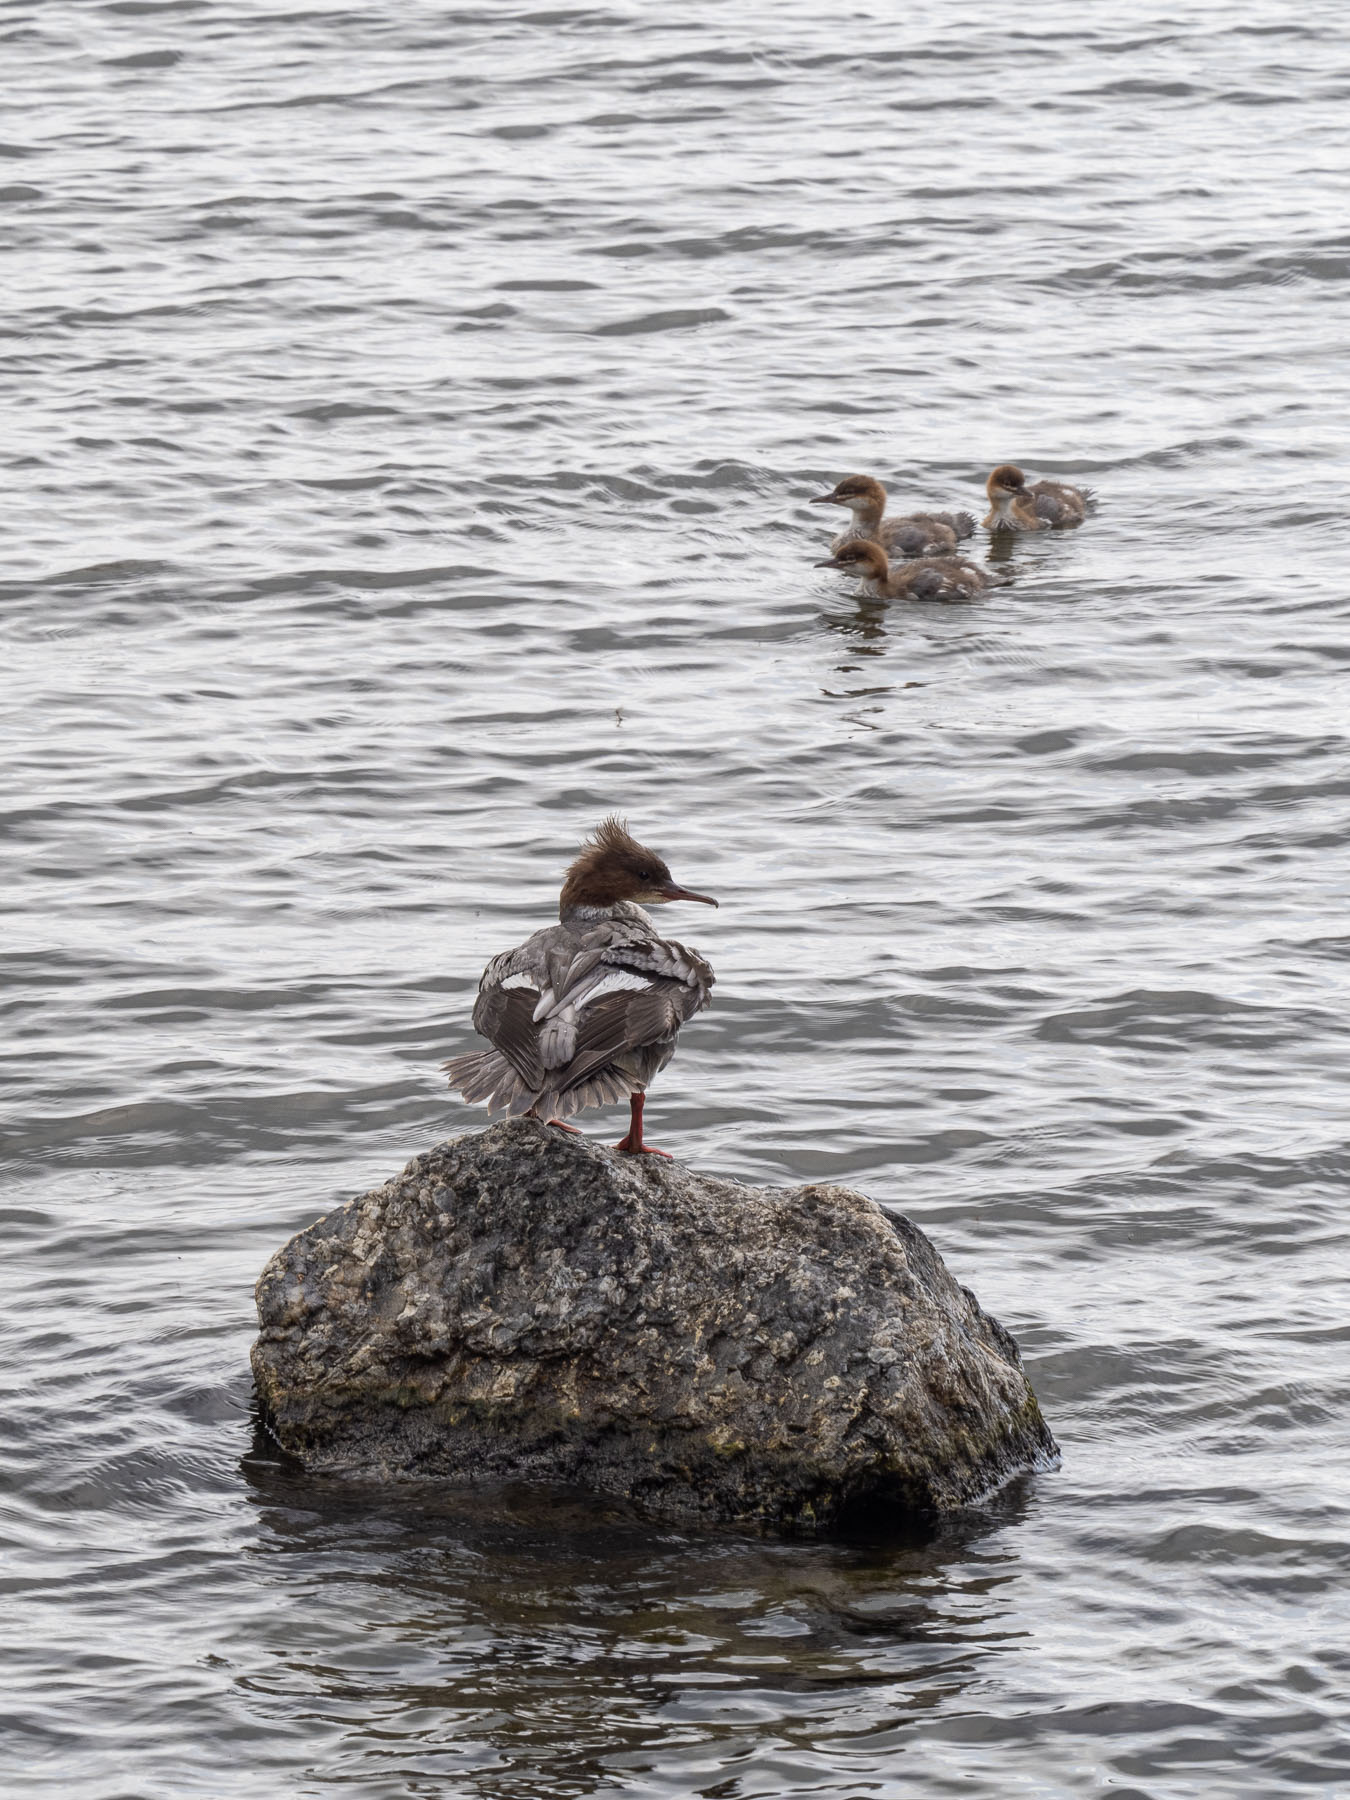 Большой крохаль (Mergus merganser).
Самка с птенцами на берегу озера M?laren, Стокгольм. Июль 2020 года. Автор фото: Сутормина Марина